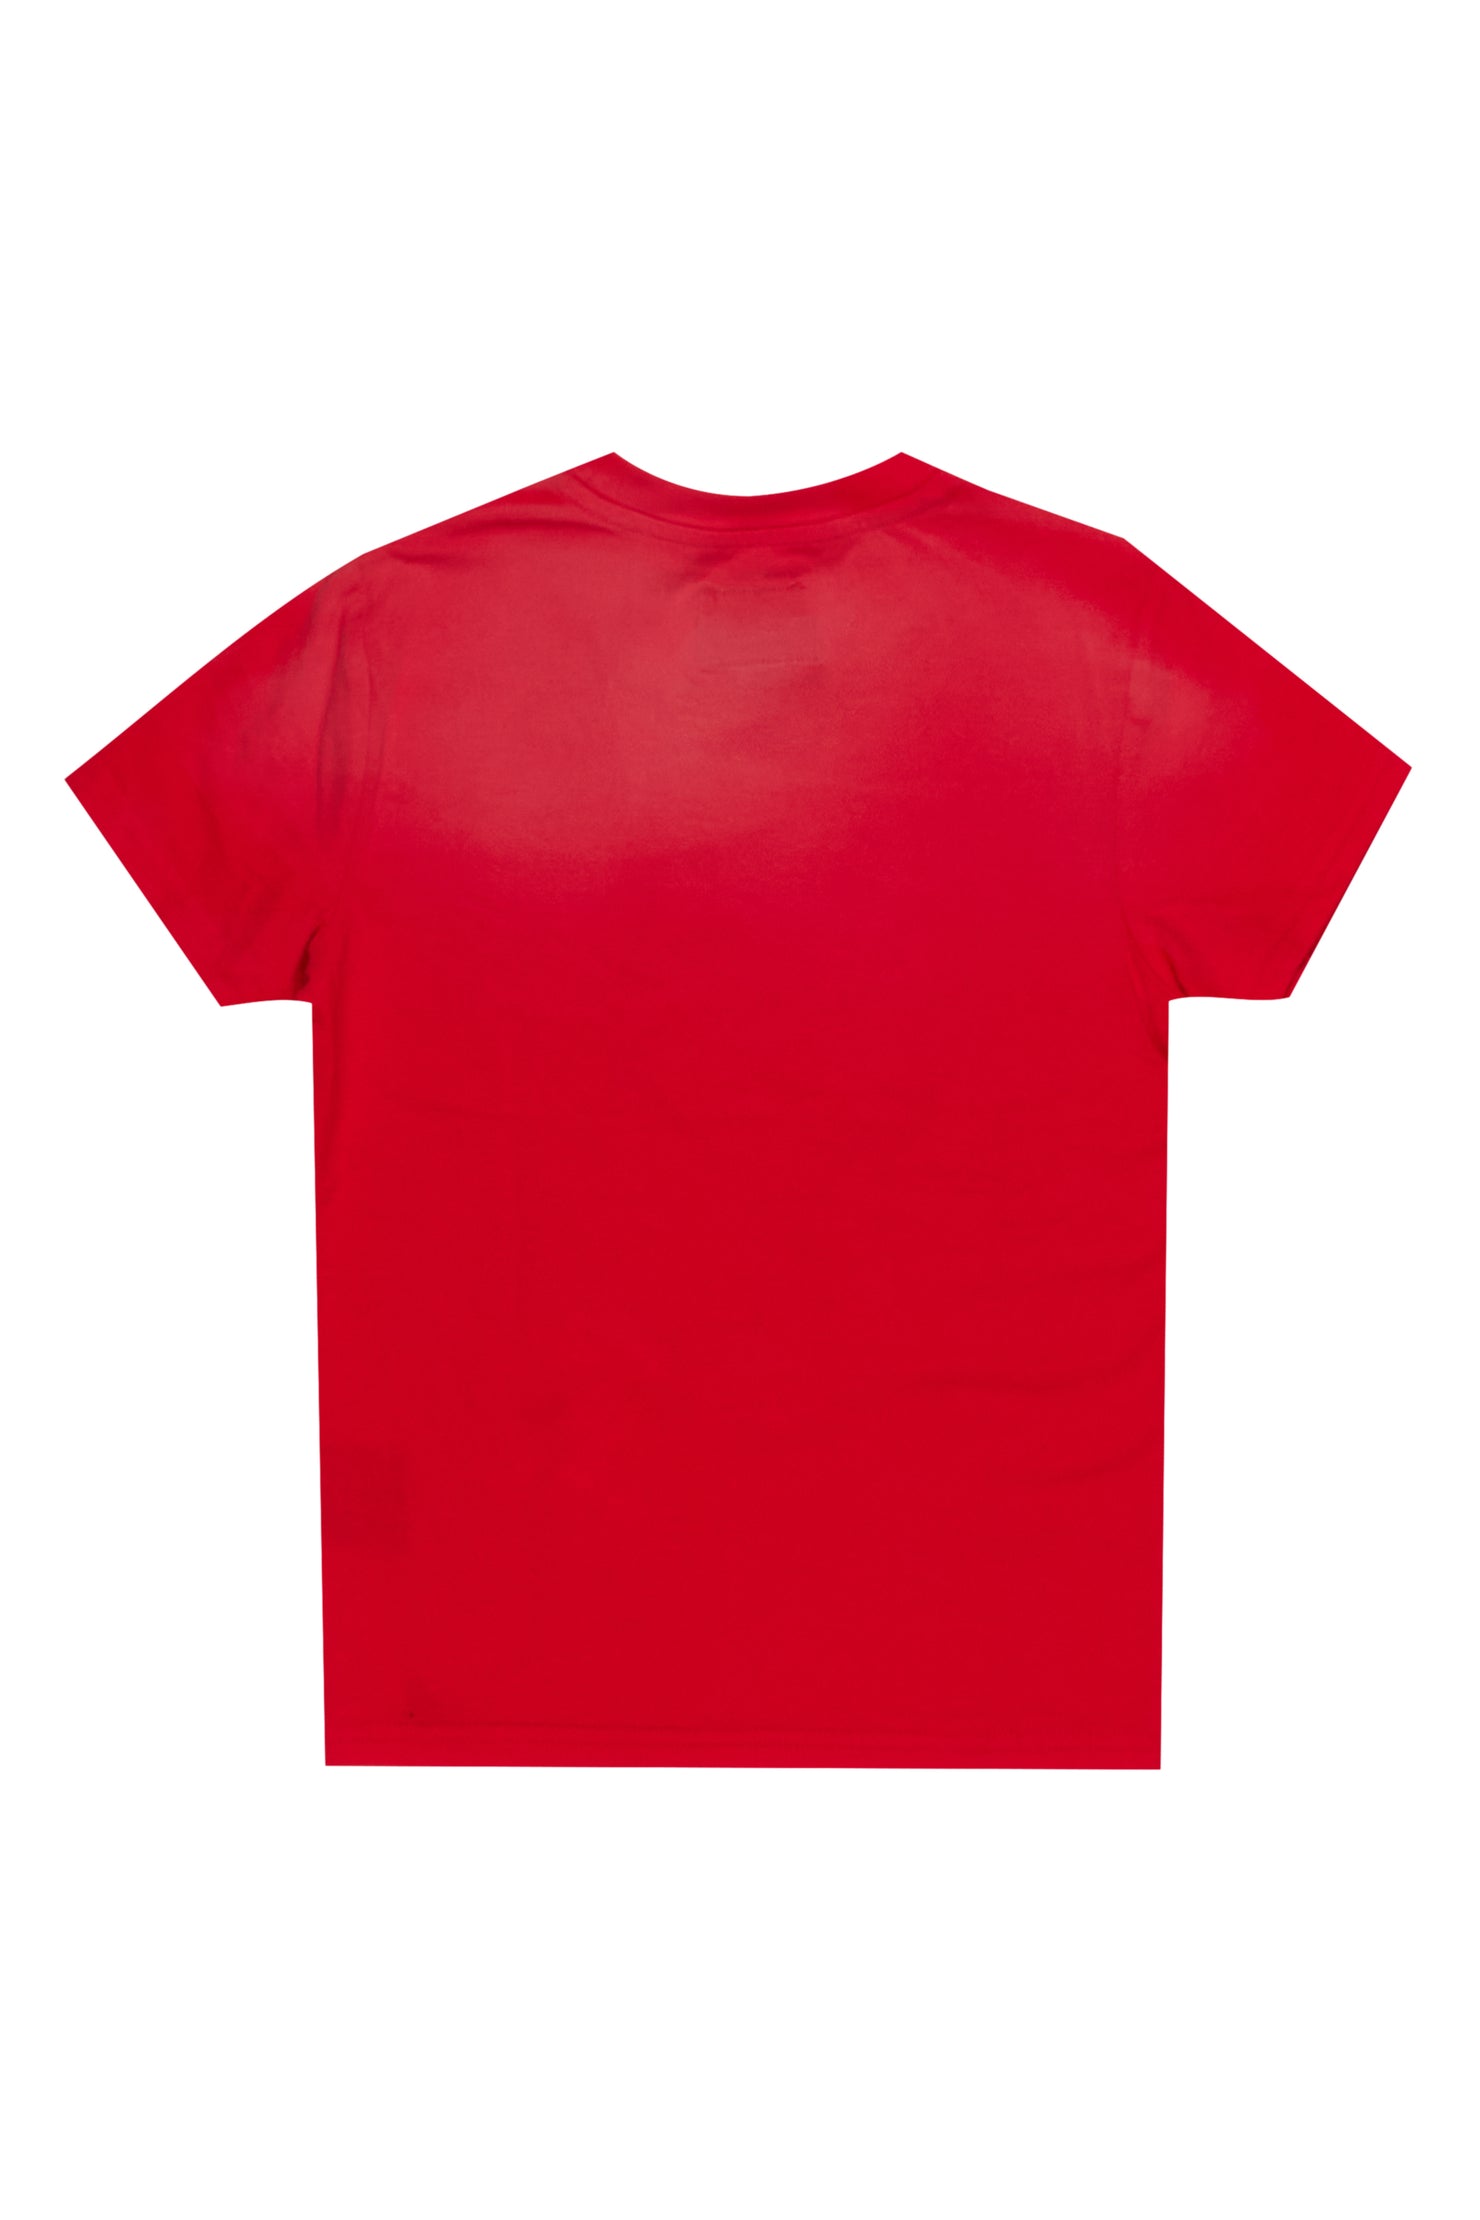 Girls Palmira Red Graphic T-Shirt